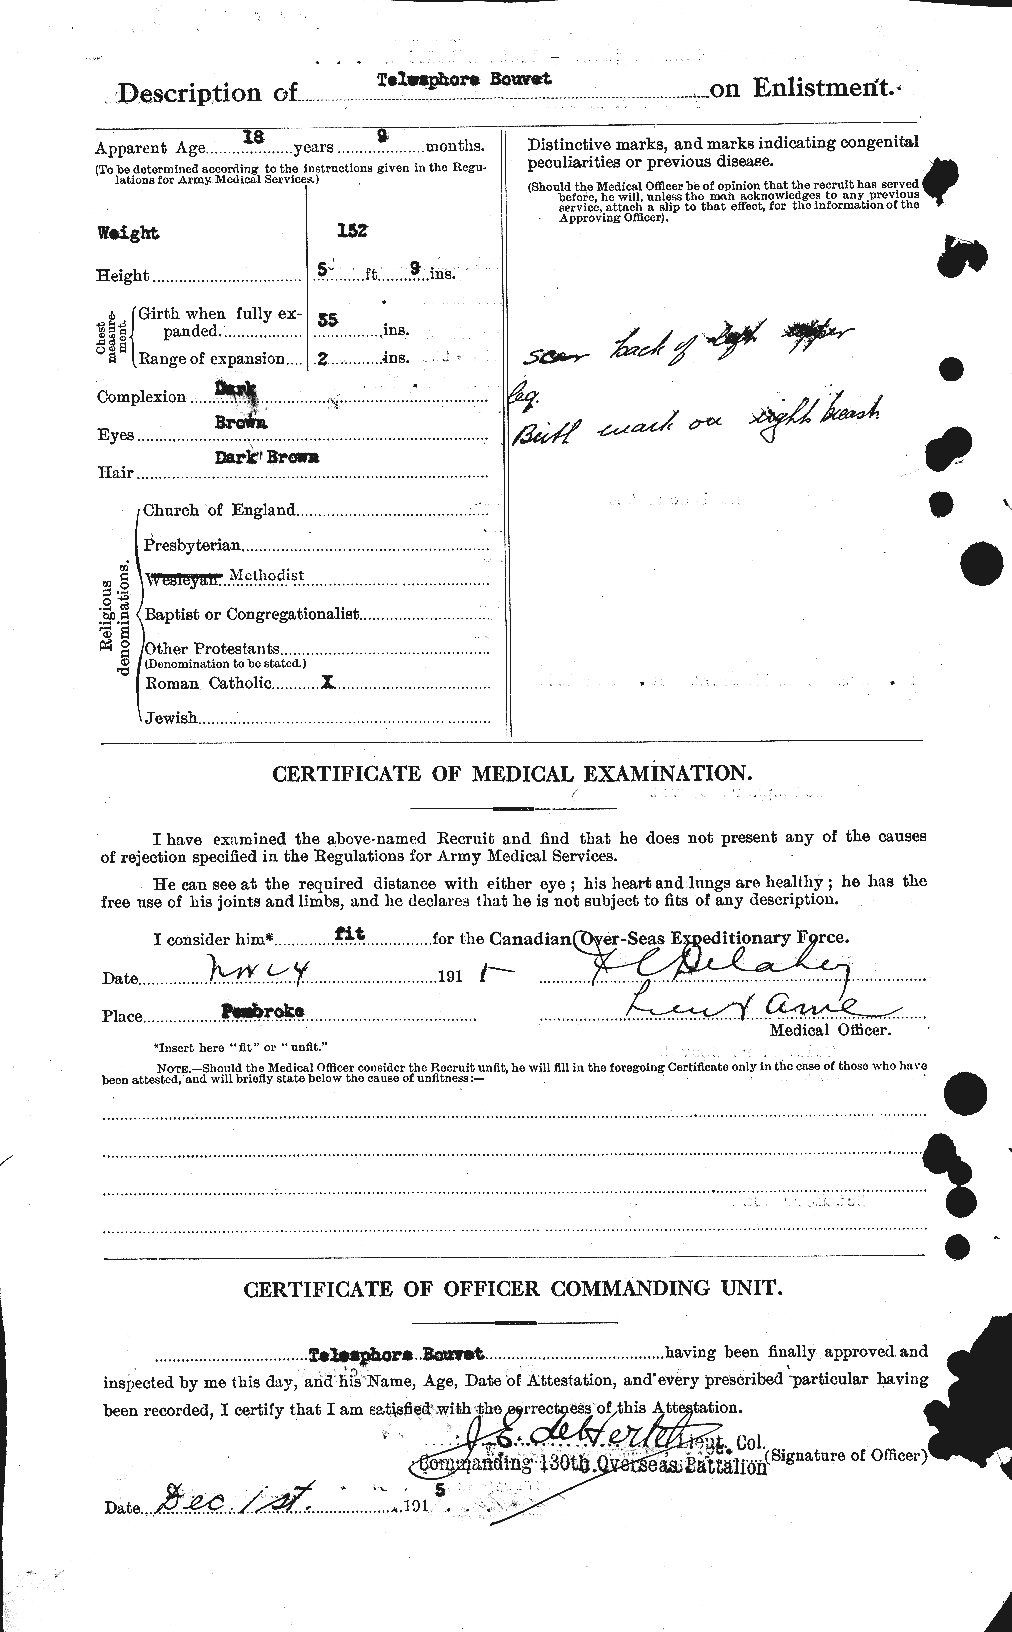 Dossiers du Personnel de la Première Guerre mondiale - CEC 254339b